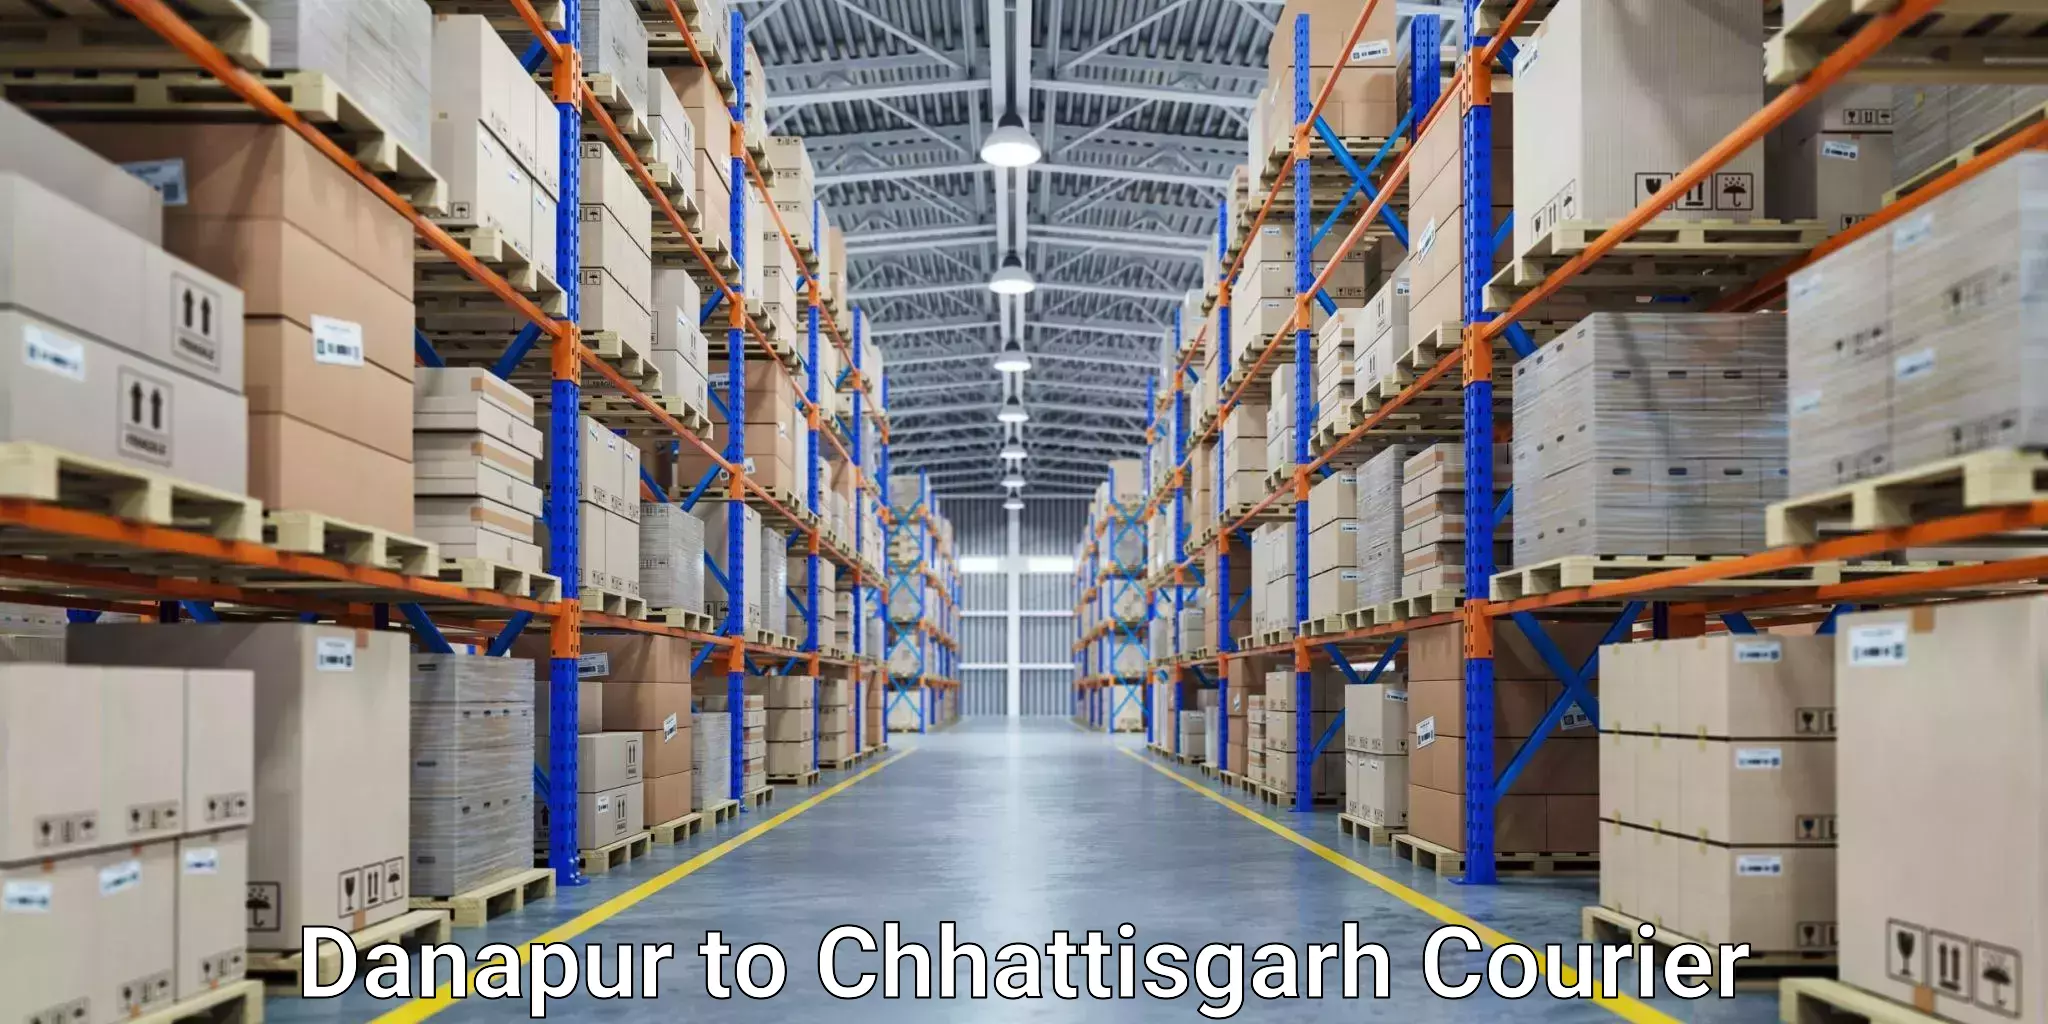 Express delivery capabilities in Danapur to Chhattisgarh